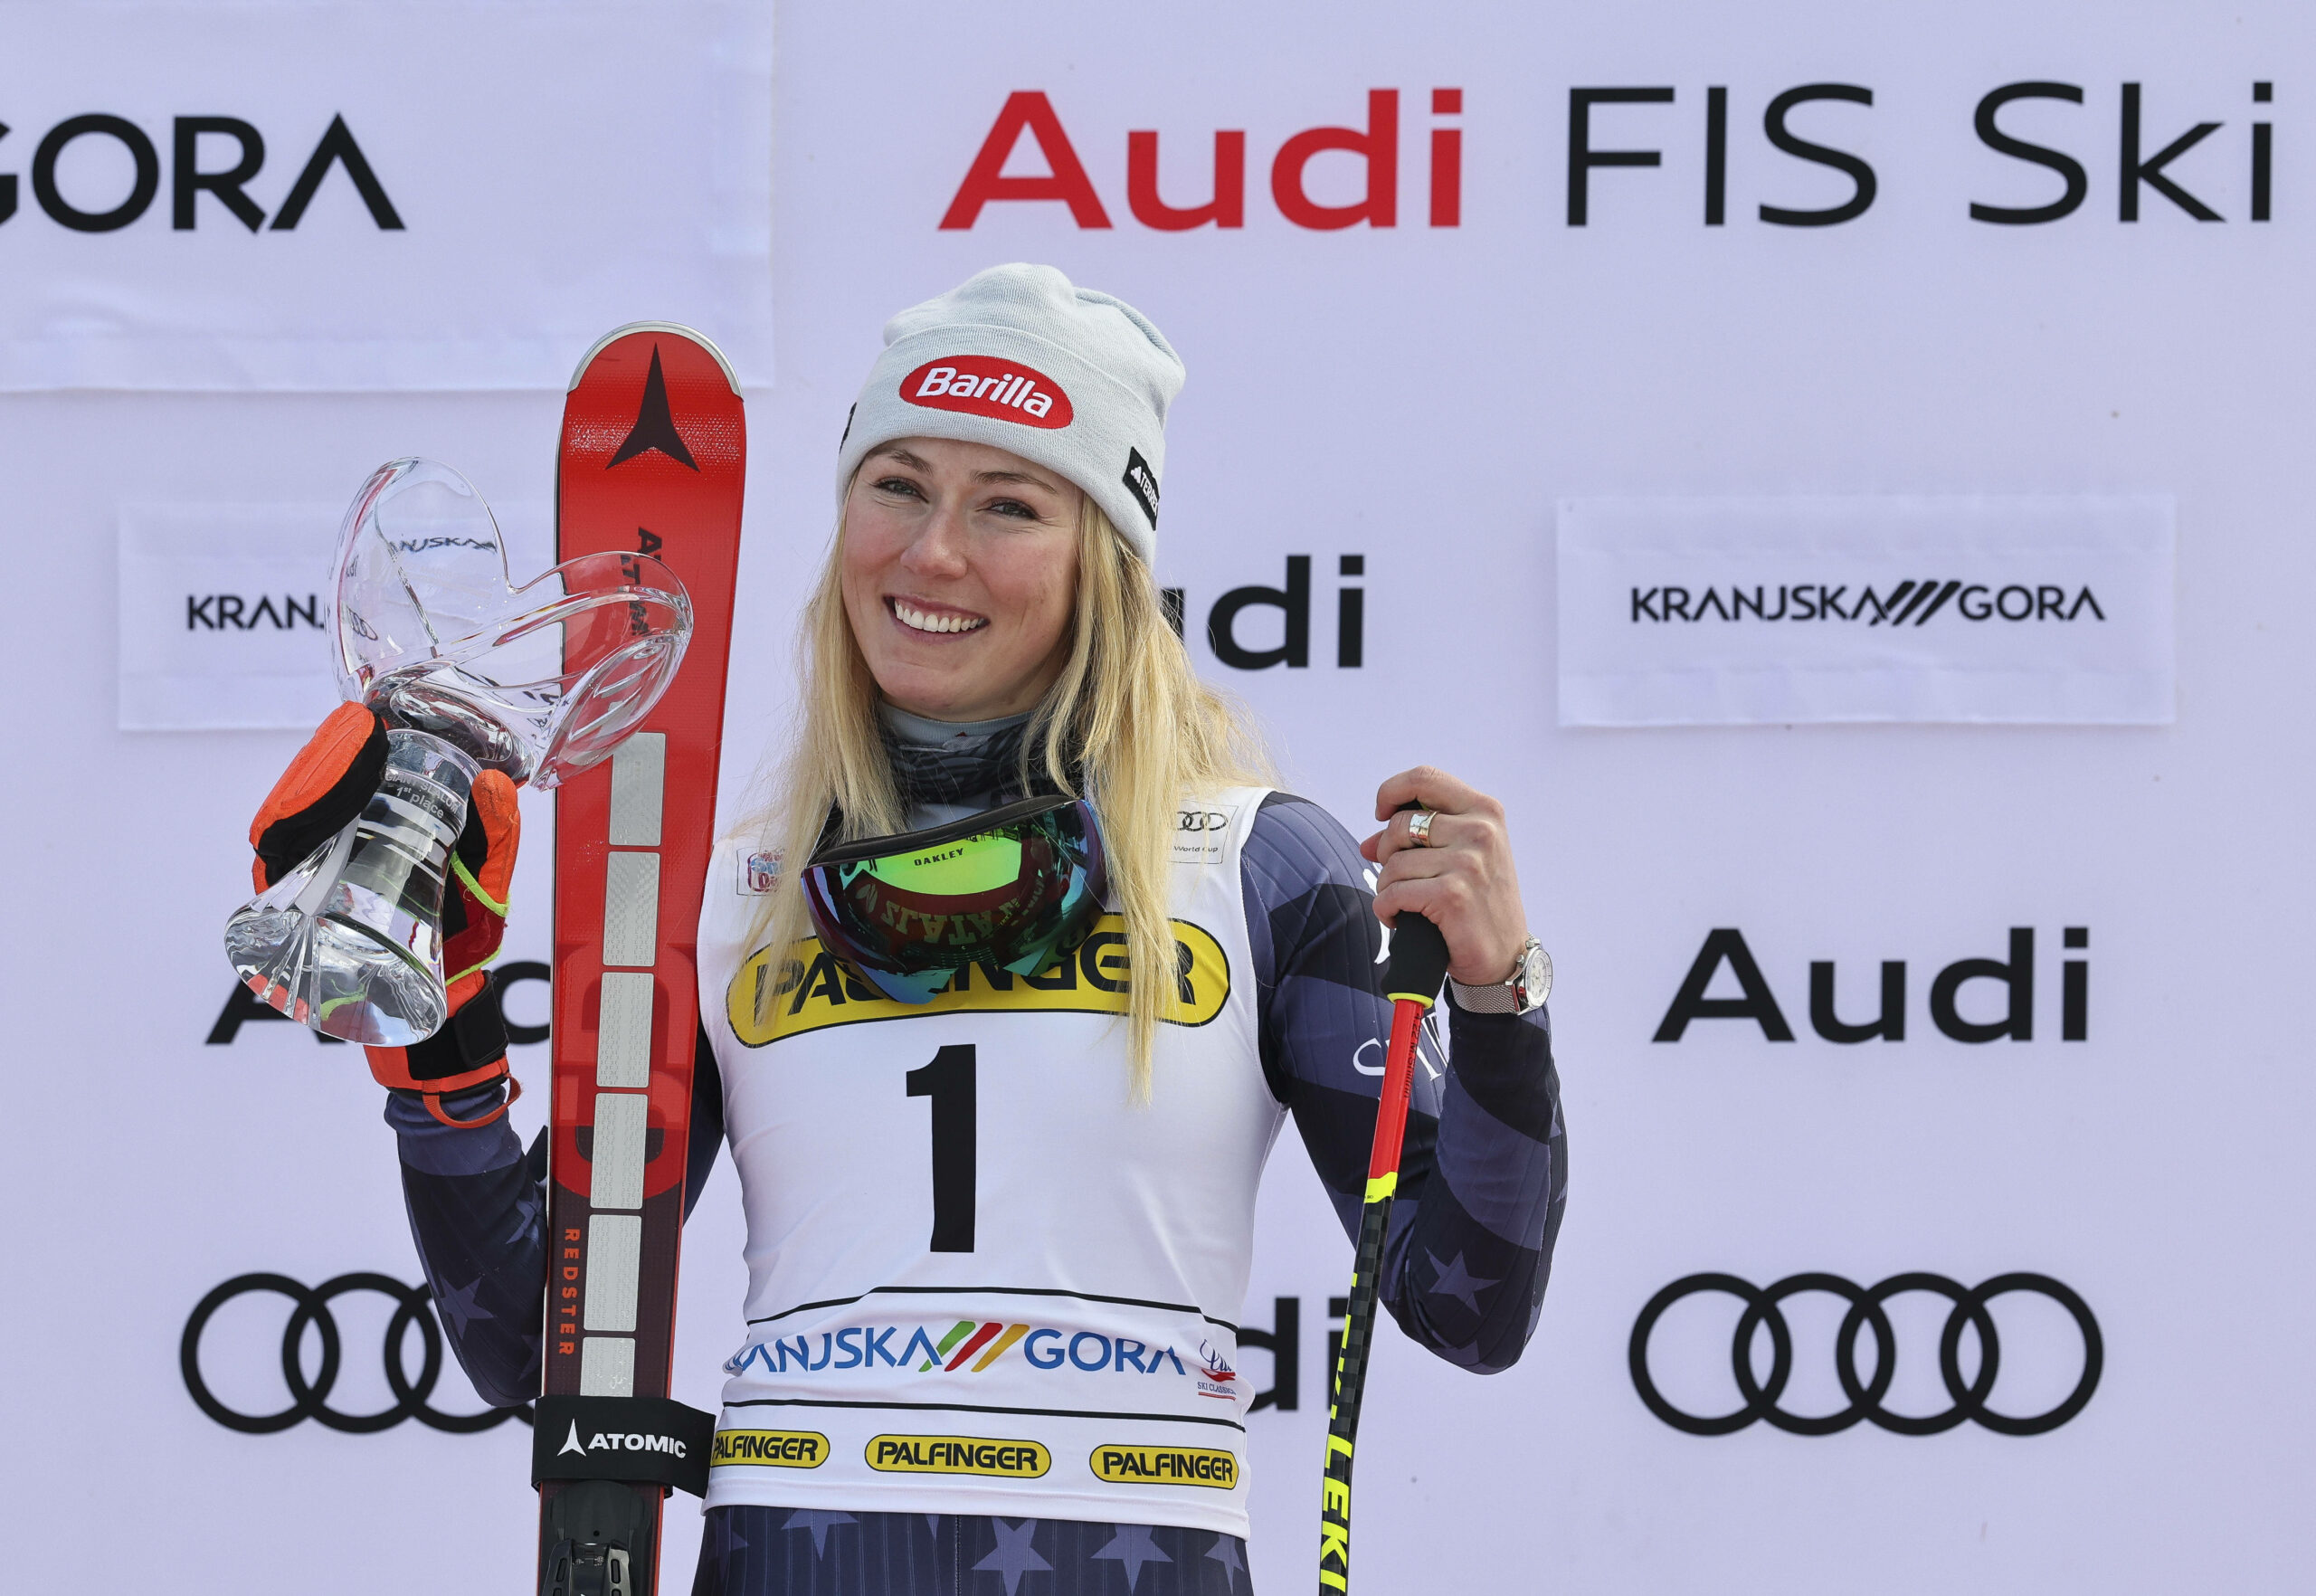 Skirennfahrerin Mikaela Shiffrin